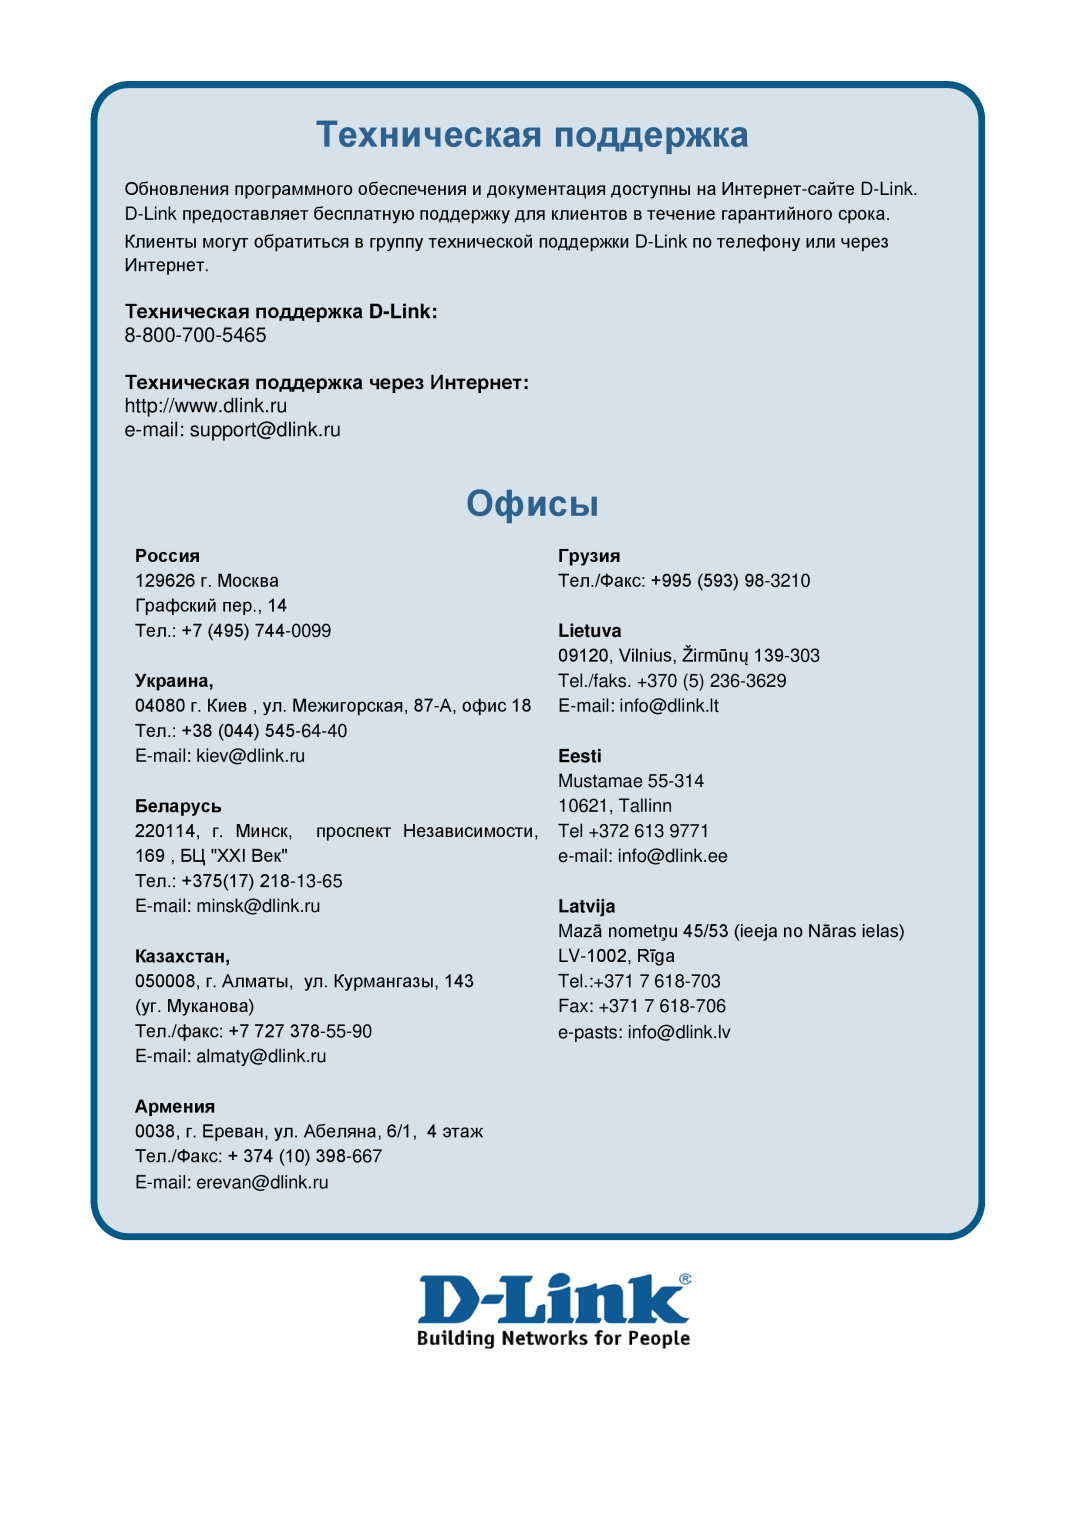 D-Link ethernet managed switch manual Офисы, Техническая поддержка D-Link, e-mail support@dlink.ru 